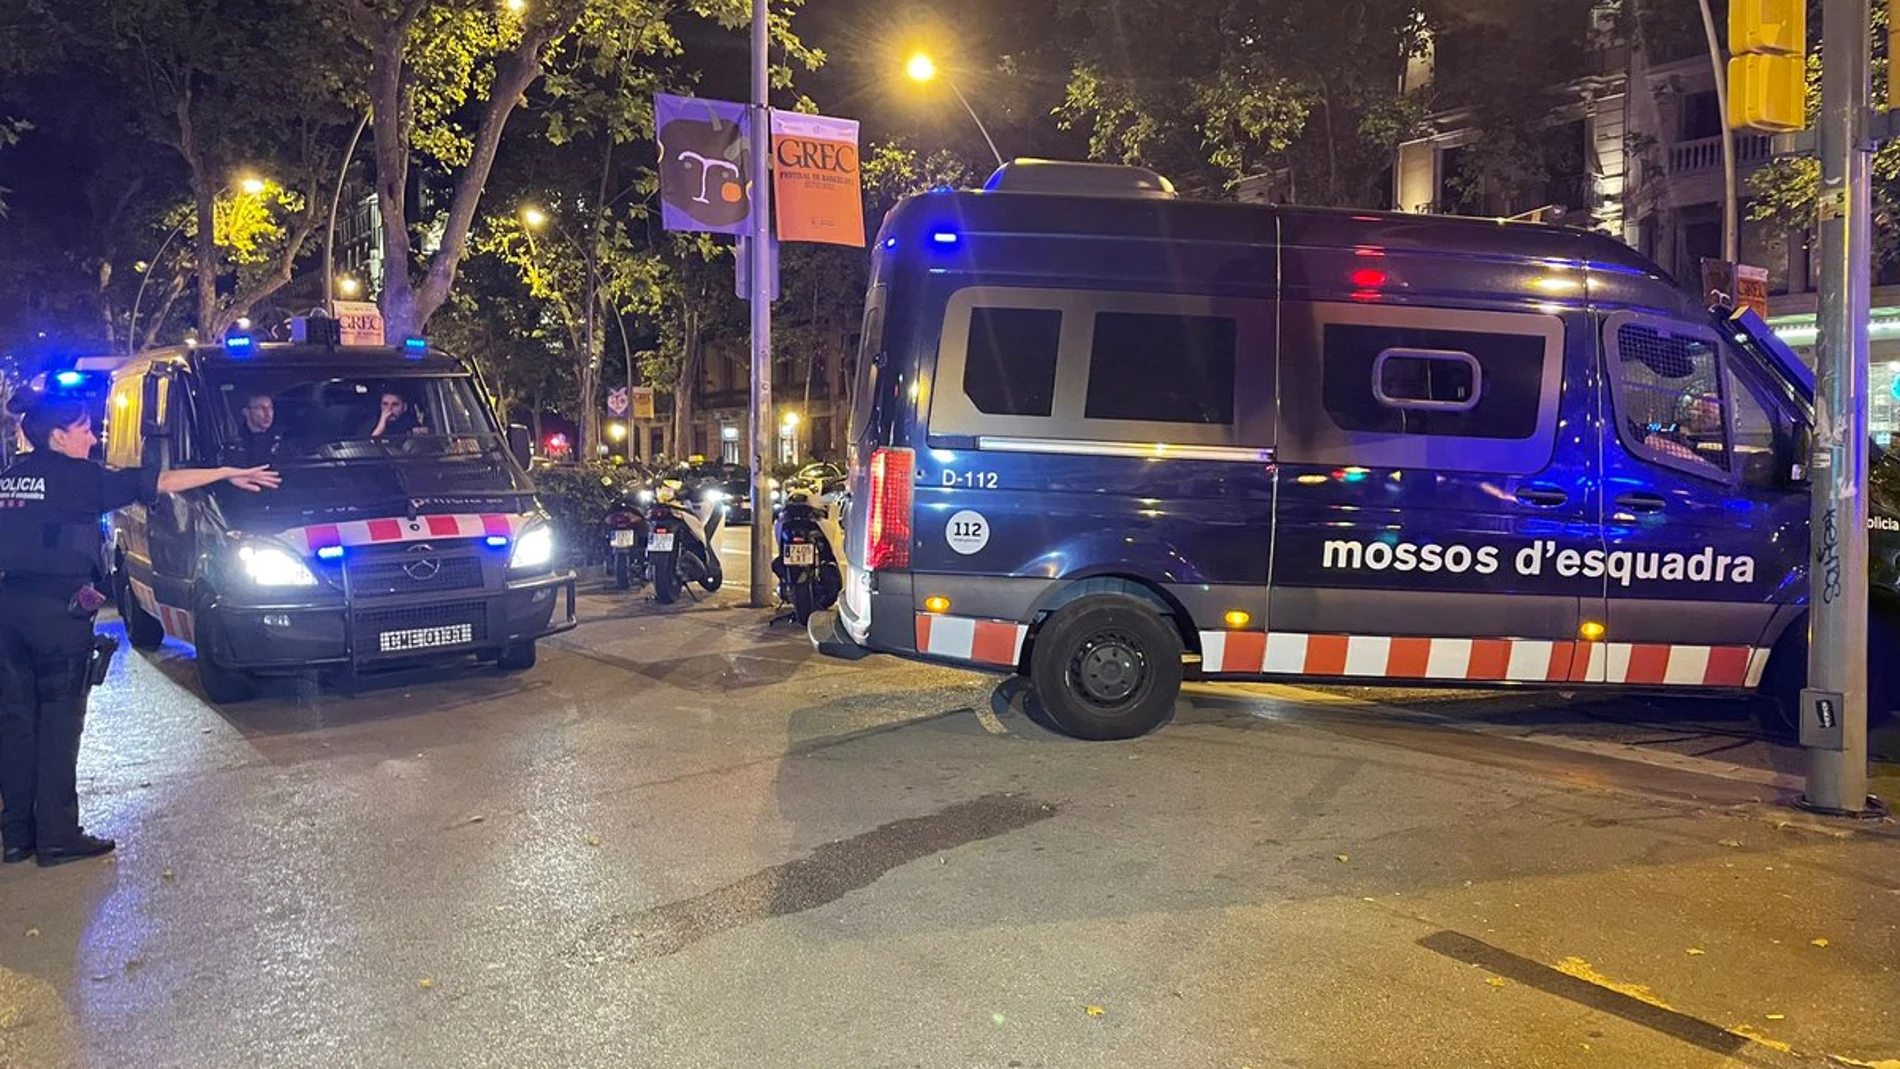 Los Mossos d'Esquadra liberan a un hombre que estaba secuestrado en un hotel de Barcelona